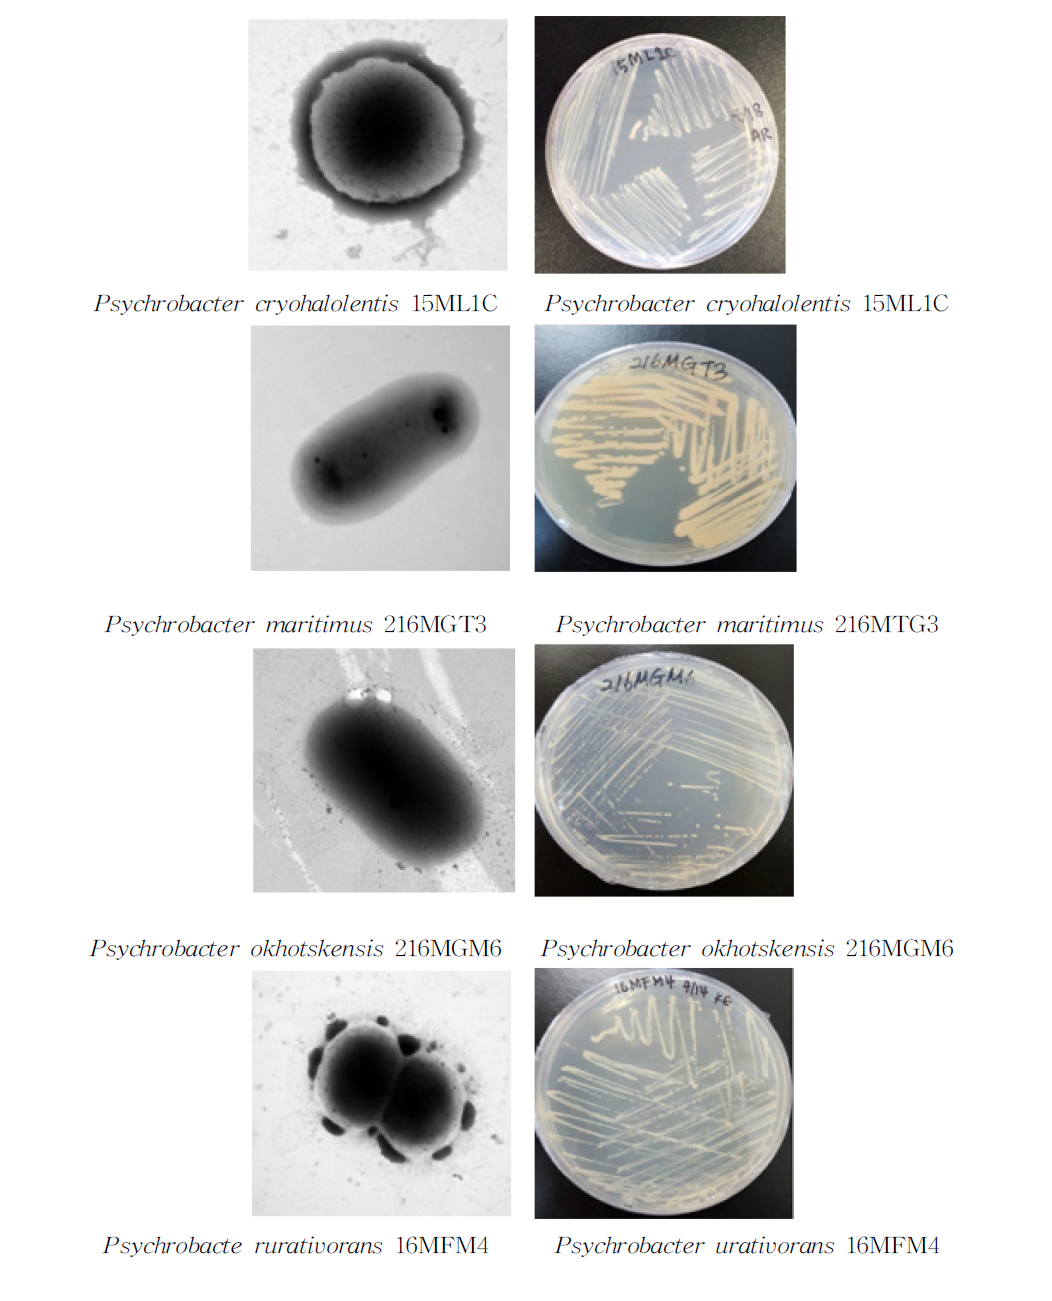 방사선 내성 Psychrobacter속 발굴종의 전자현미경과 배양체 사진